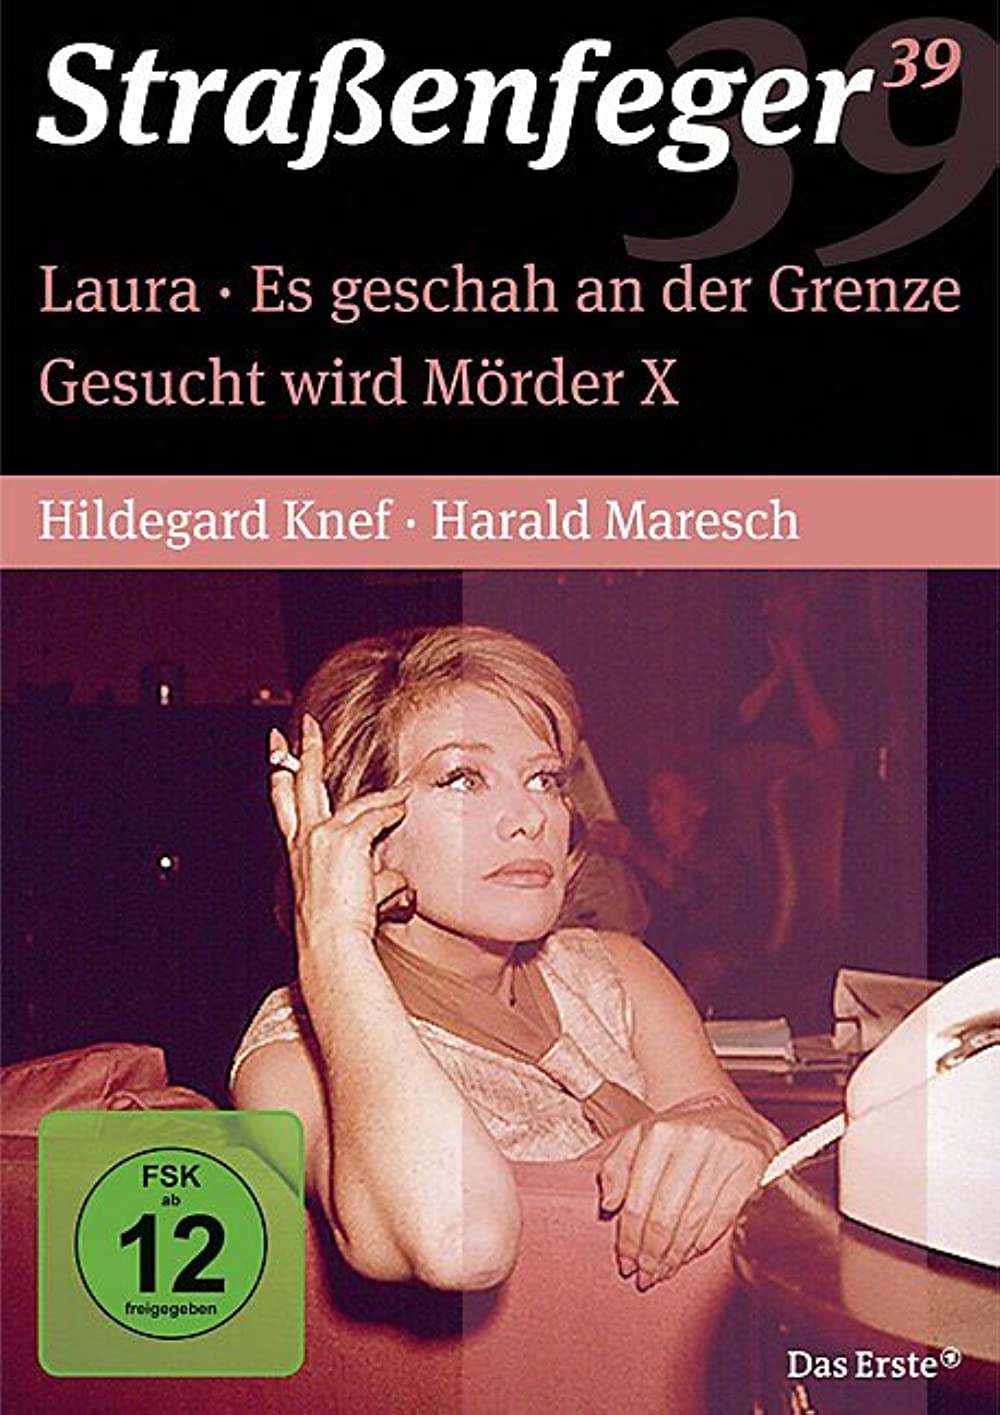 Filmbeschreibung zu Laura (1962)